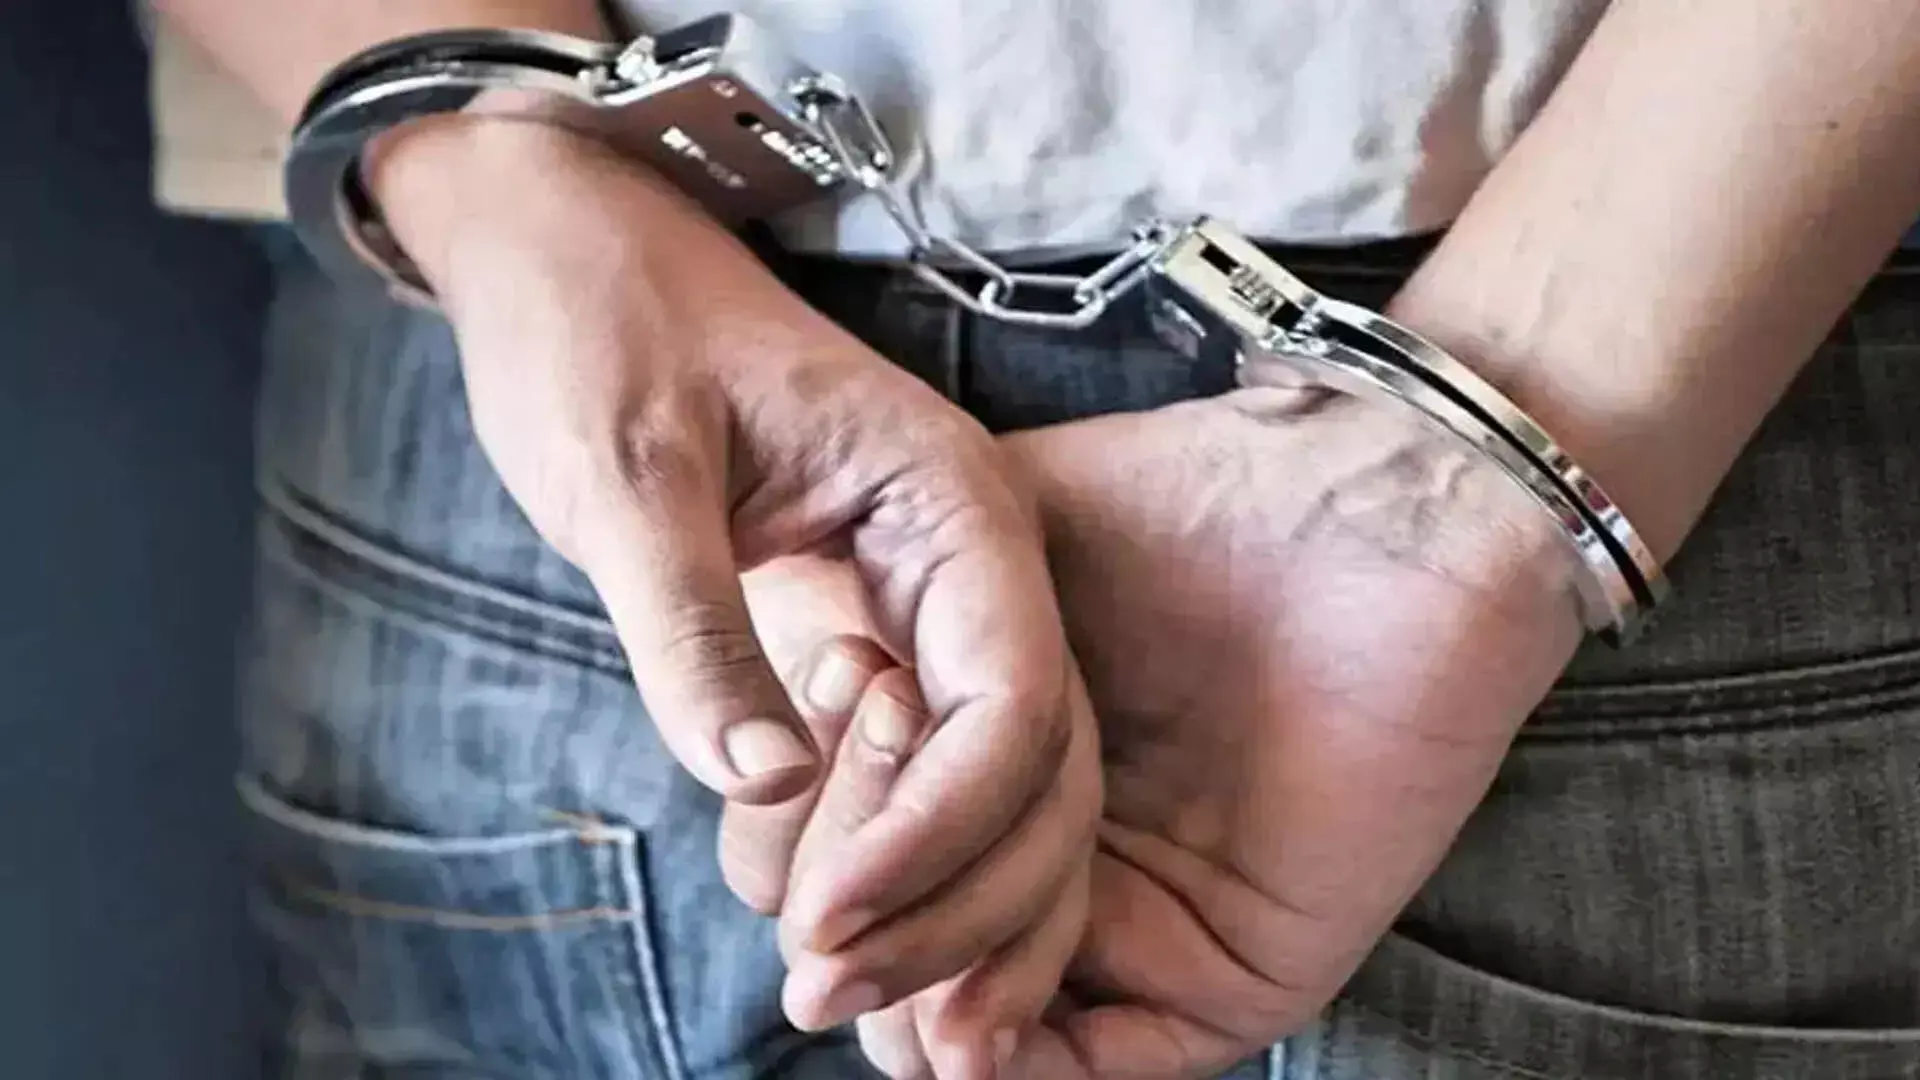 MUMBAI: ठाणे में वैवाहिक धोखाधड़ी के आरोप में 33 वर्षीय व्यक्ति गिरफ्तार